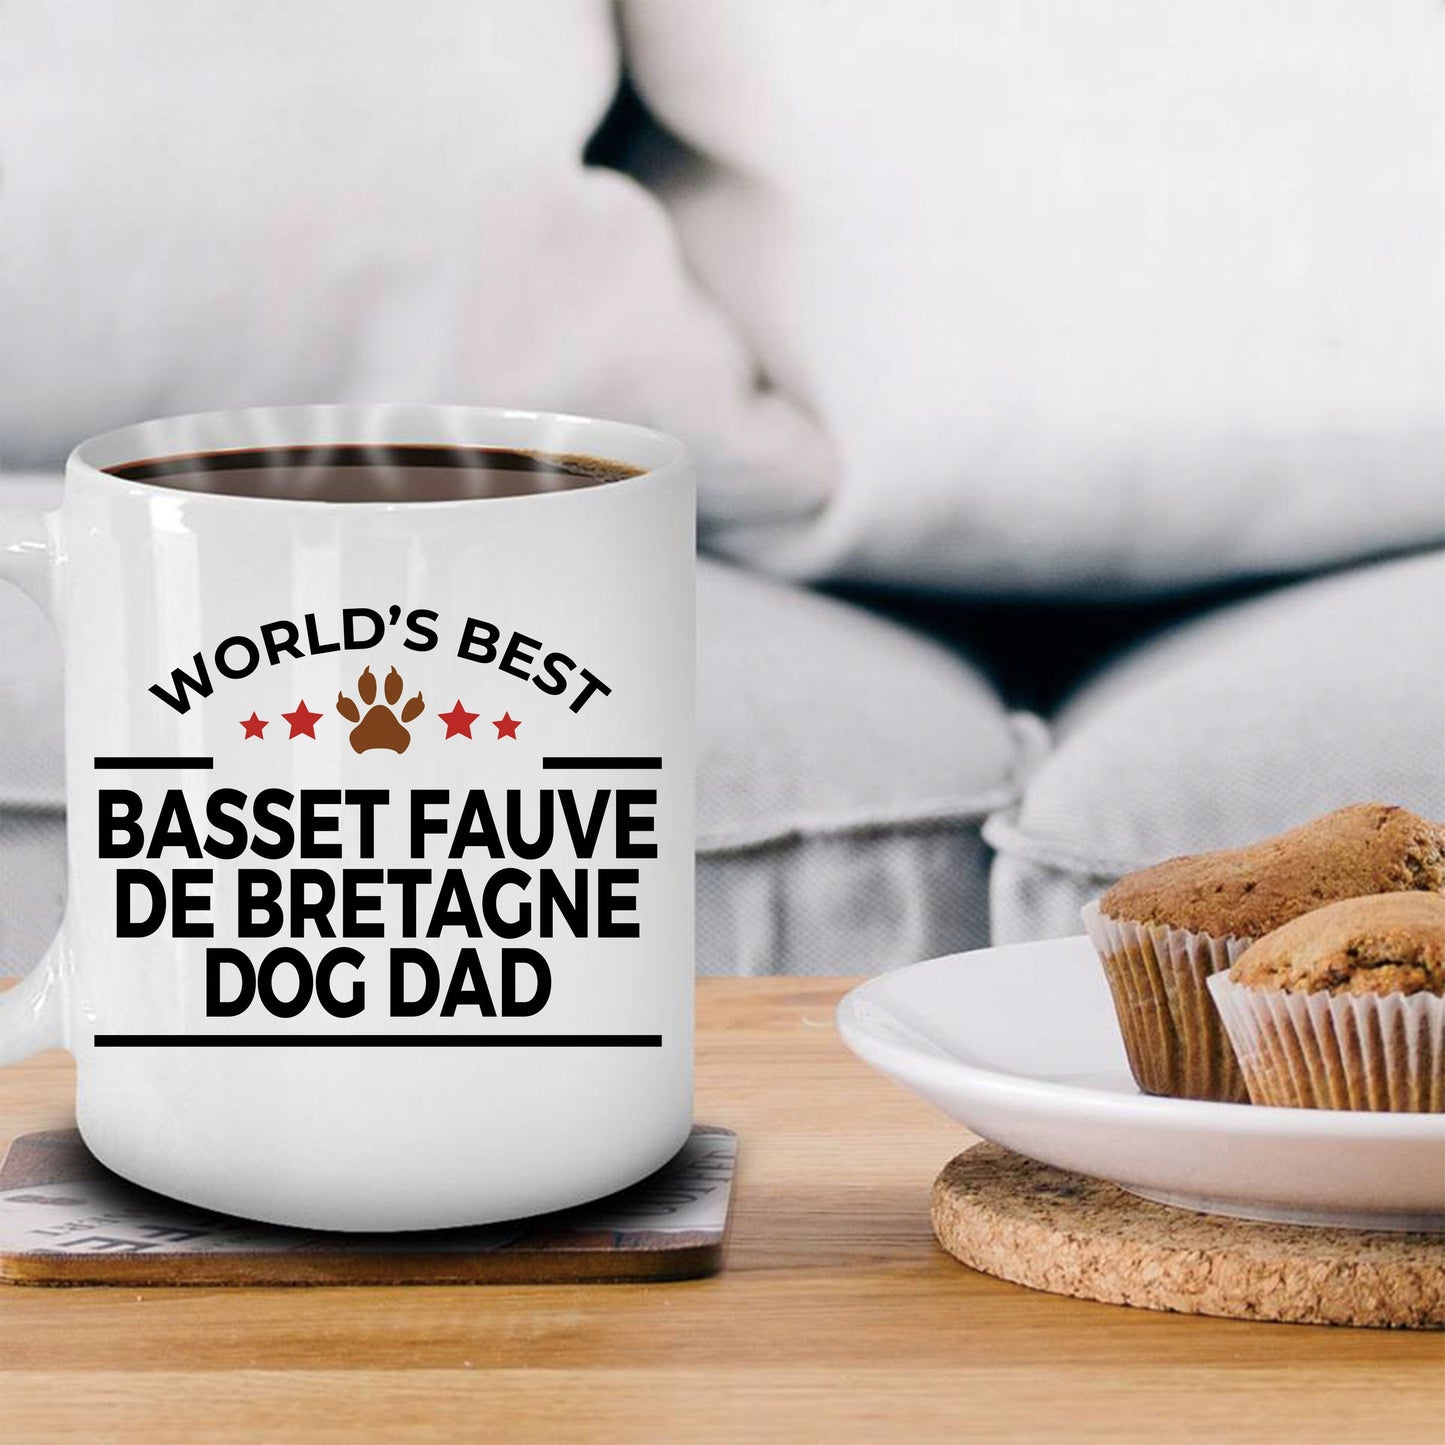 Basset Fauve de Bretagne Dog Dad Coffee Mug